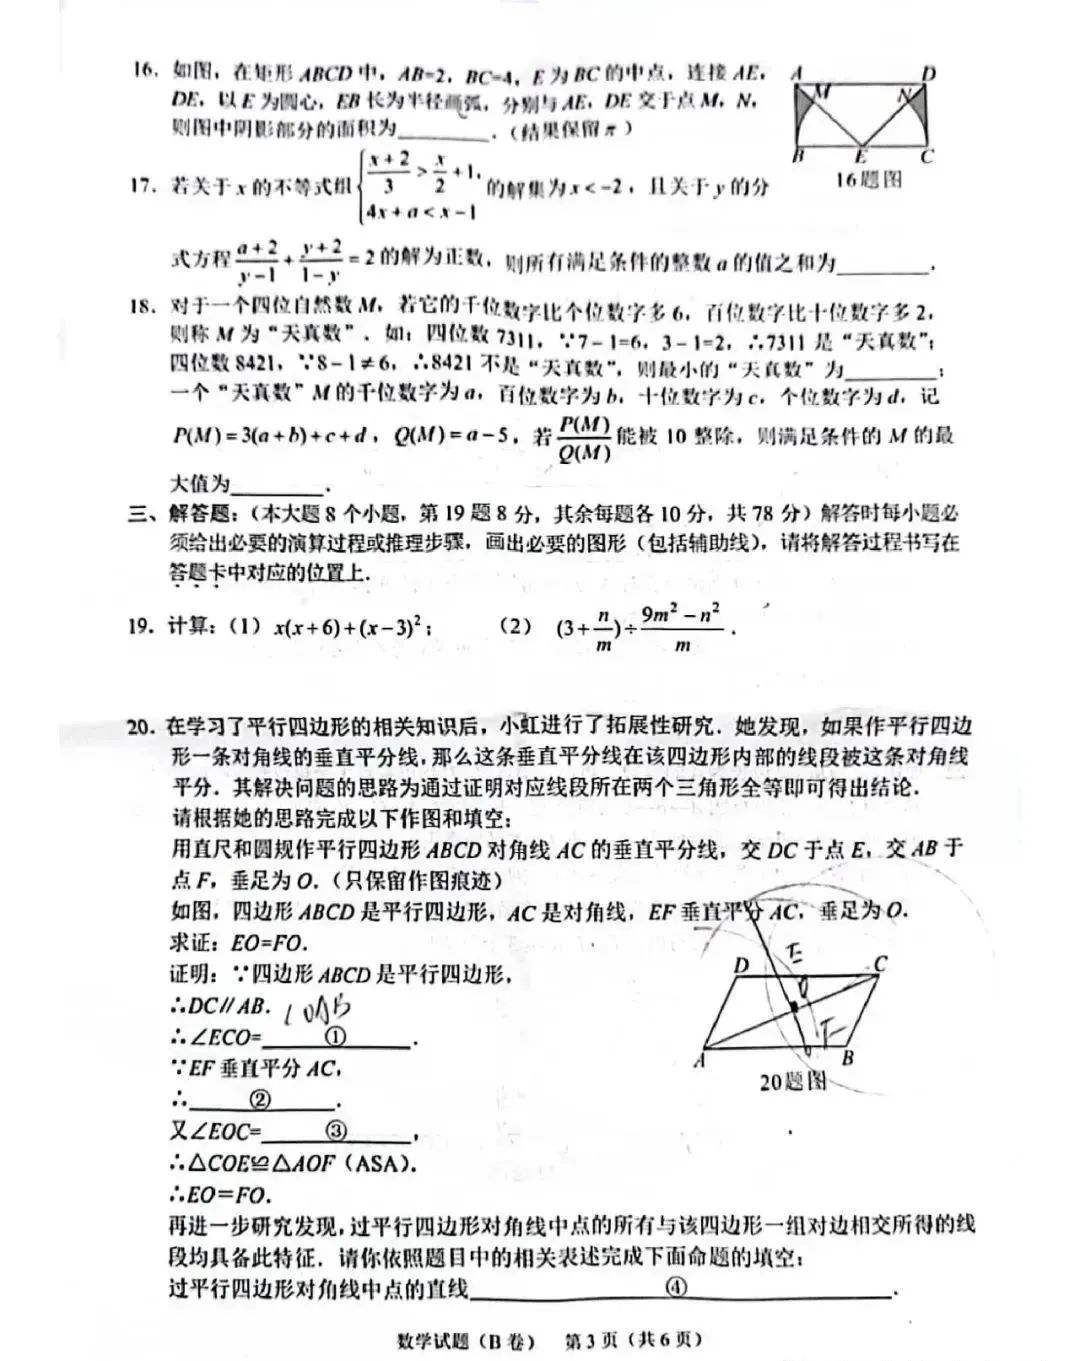 2023年重庆中考数学真题及答案